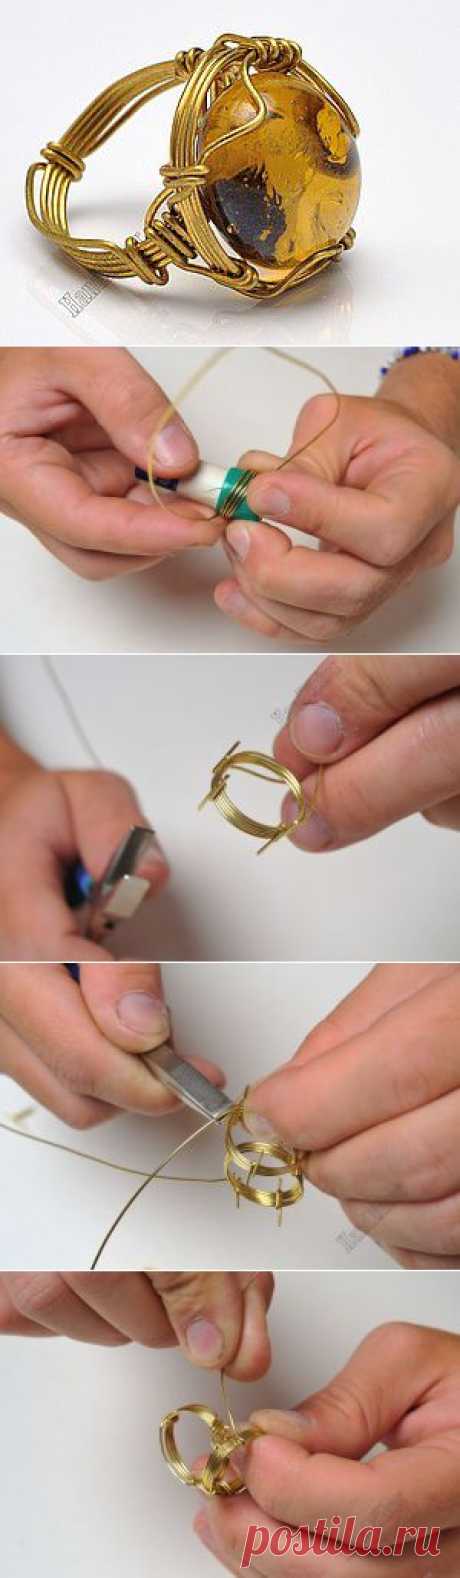 Властелин колец, или Как создать перстень из цельного куска проволоки | Своими руками